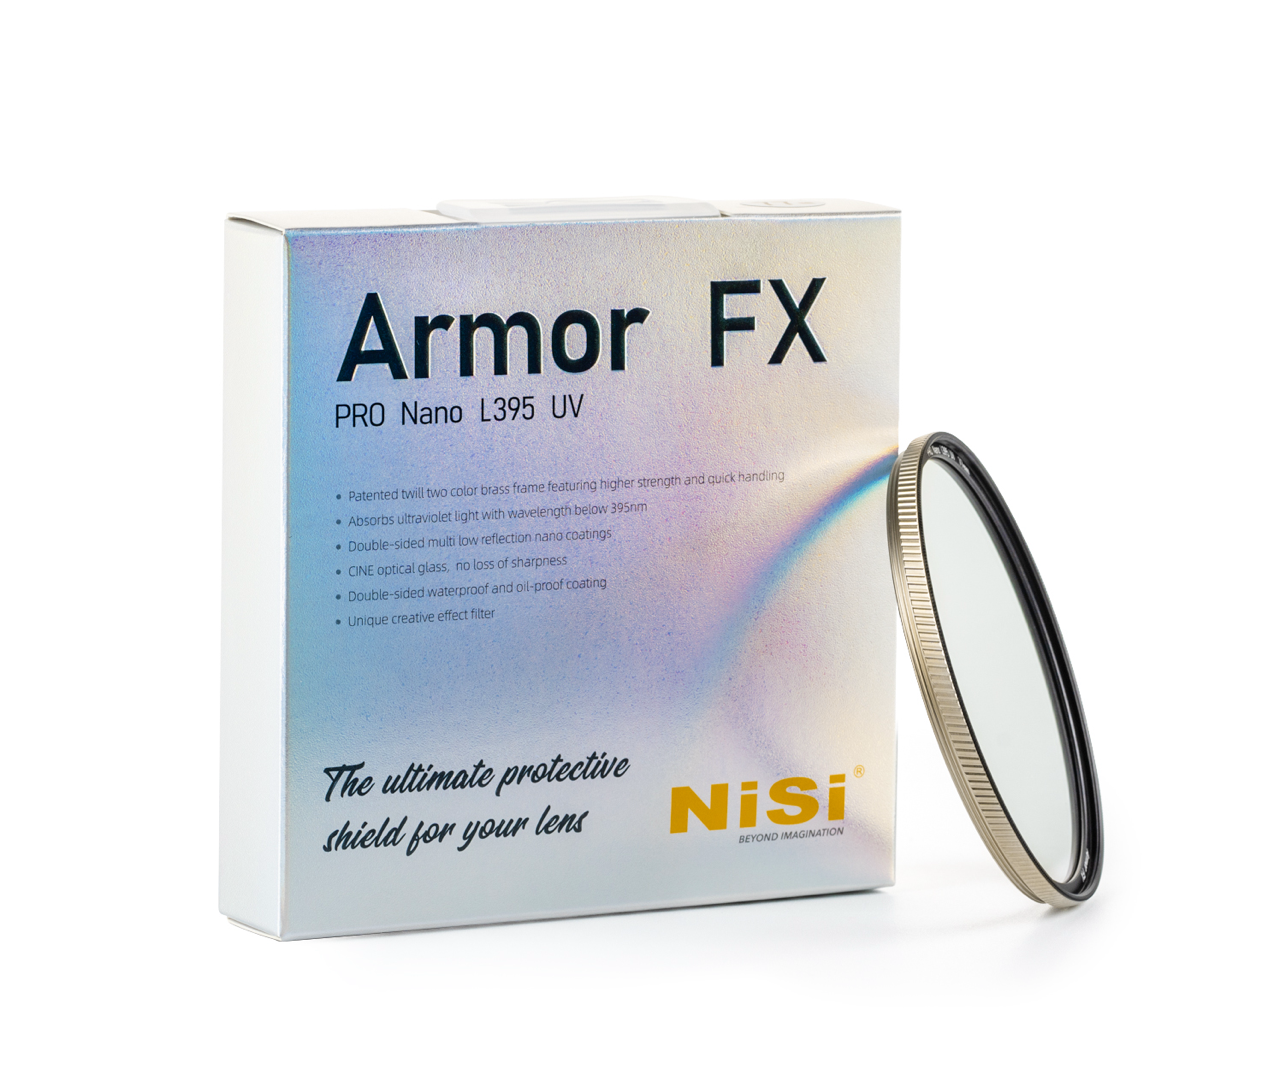 NiSi Armor FX Verpackung frontal mit Filter lehnend an der rechten Seite der Verpackung